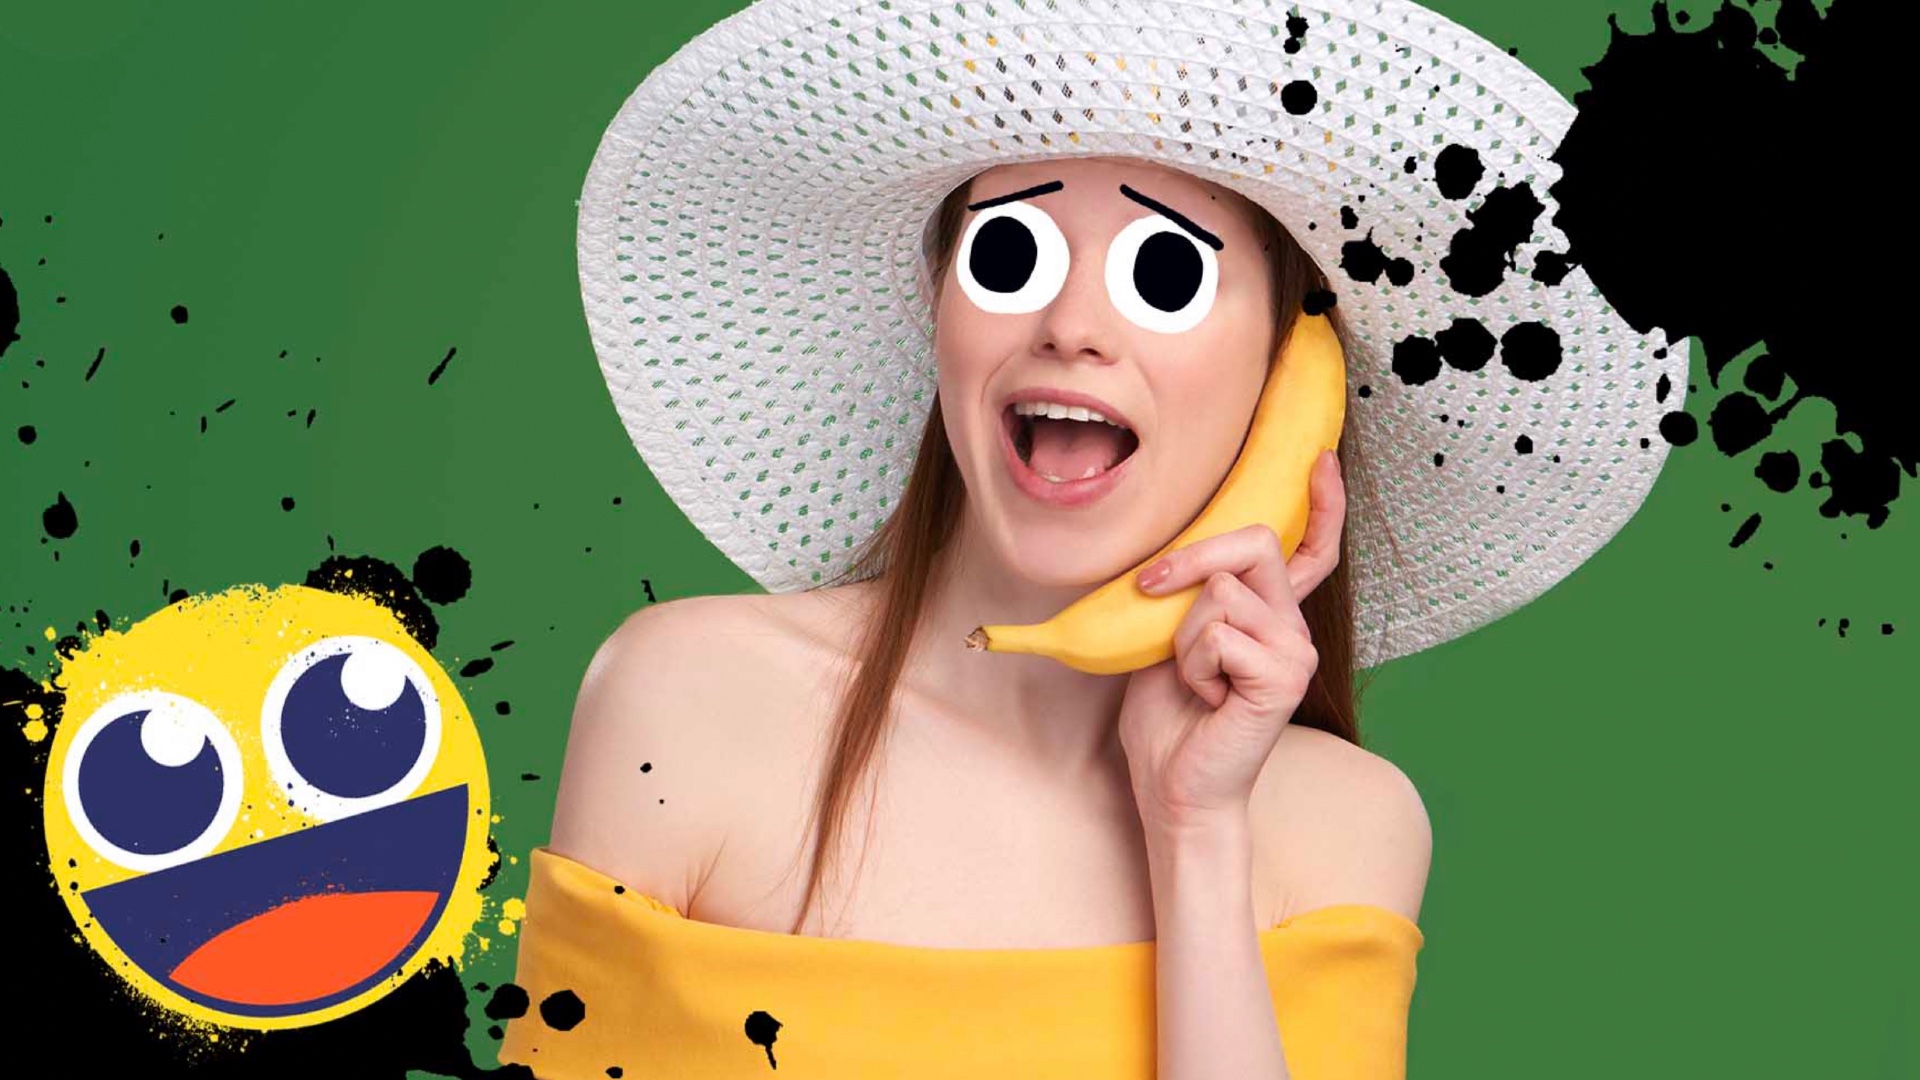 A woman using a banana as a phone